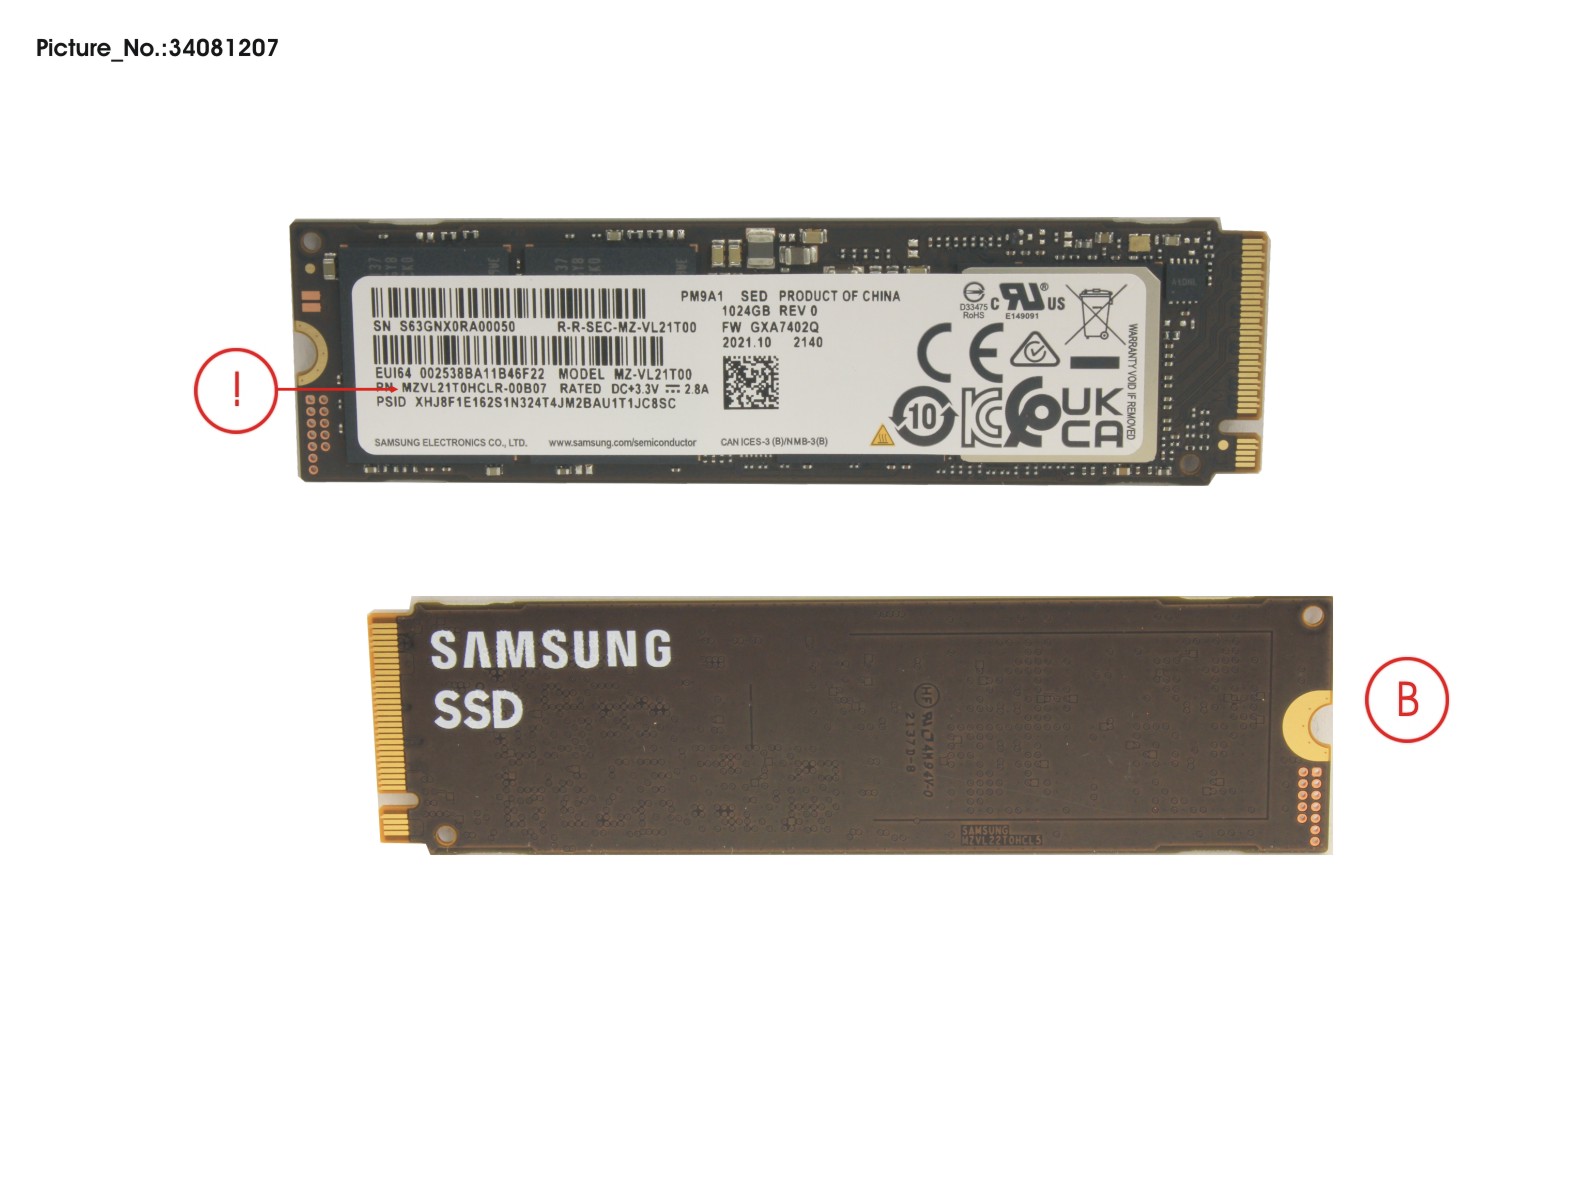 SSD PCIE M.2 PM9A1 G4 1TB(SED)